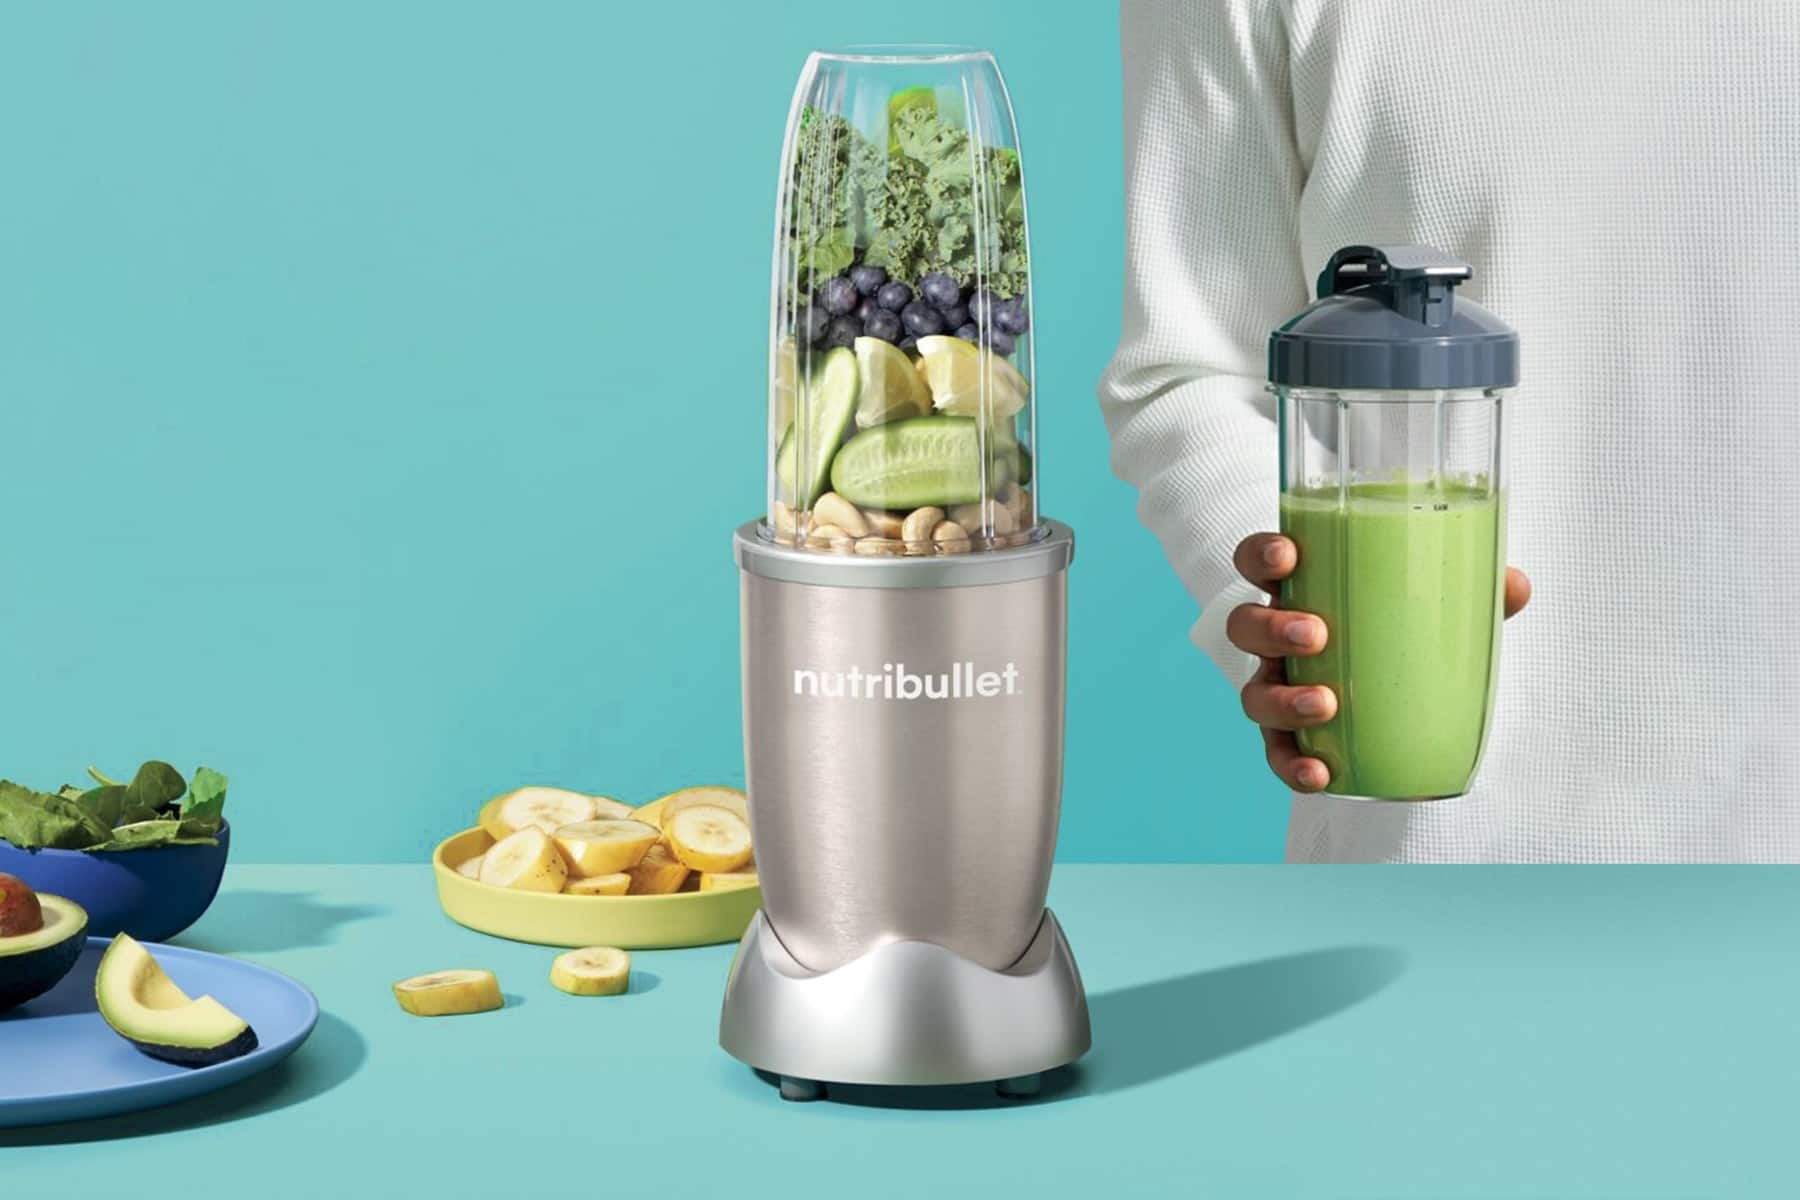 uprostřed grafiky stojí mixér Nutribuller, po jeho levé straně leží ovoce a zelenina, po pravé straně stojí muž držící hotové smoothie. Pozadí je modré, chladné